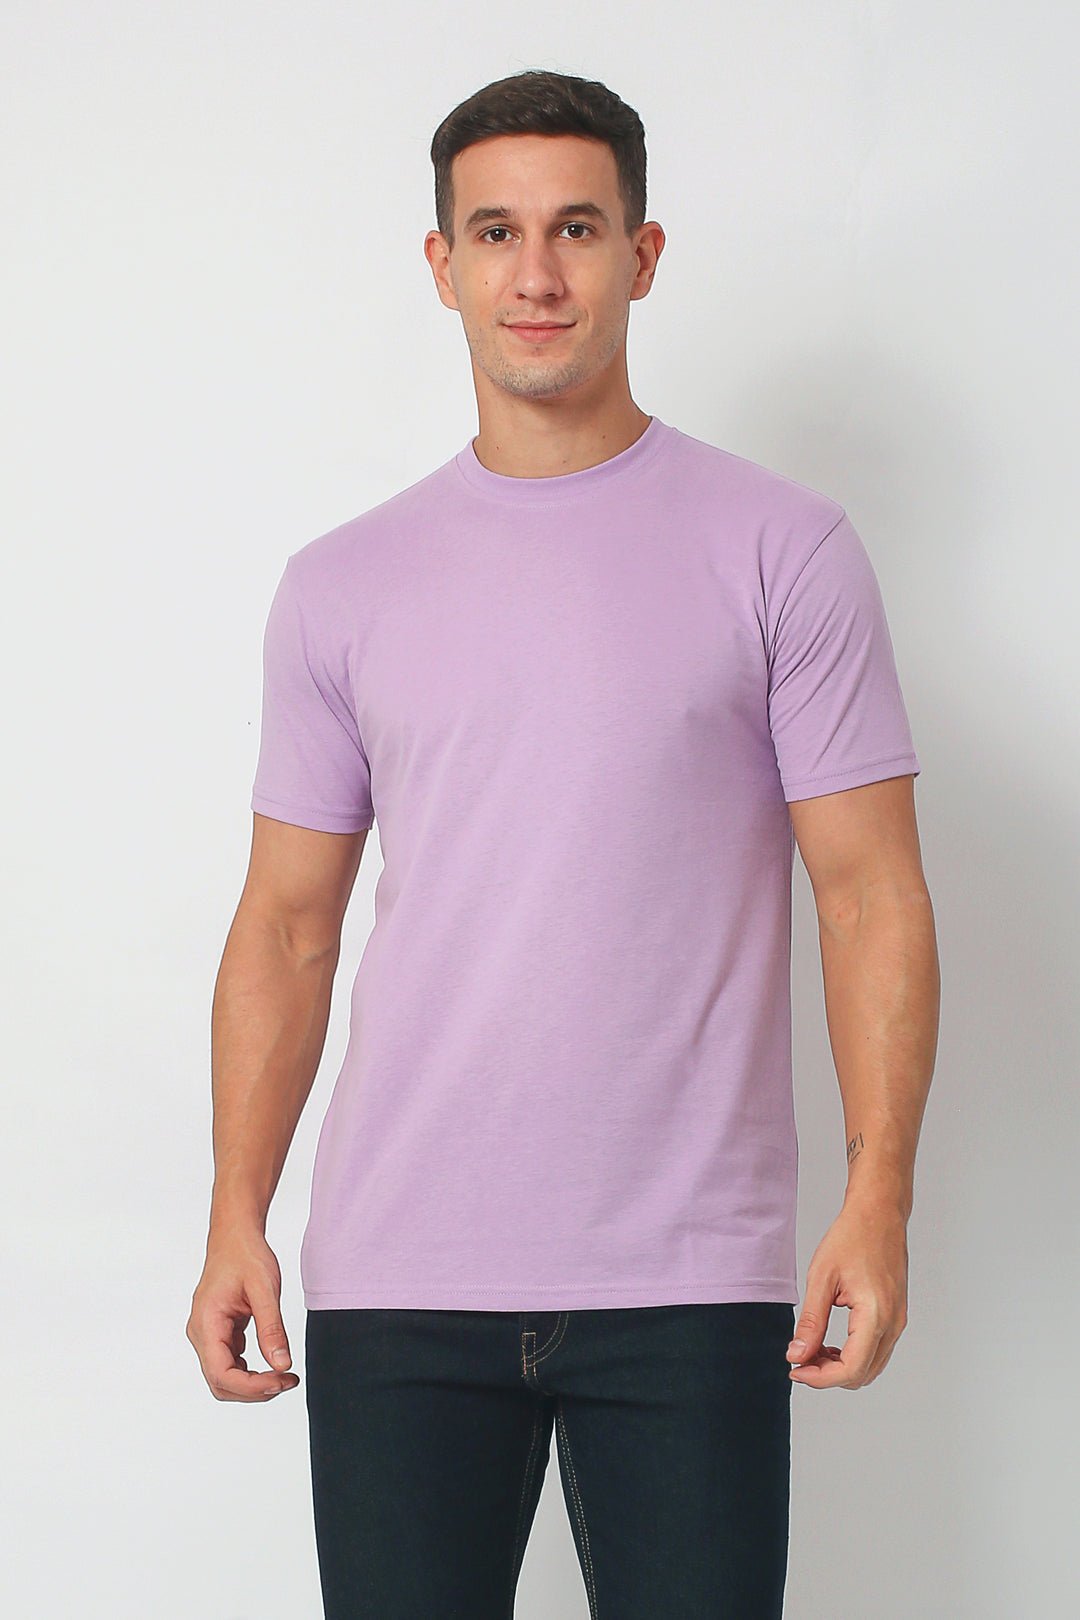 Everyday Crew Neck T-shirt|Men's T-Shirt|ROMEO NYC